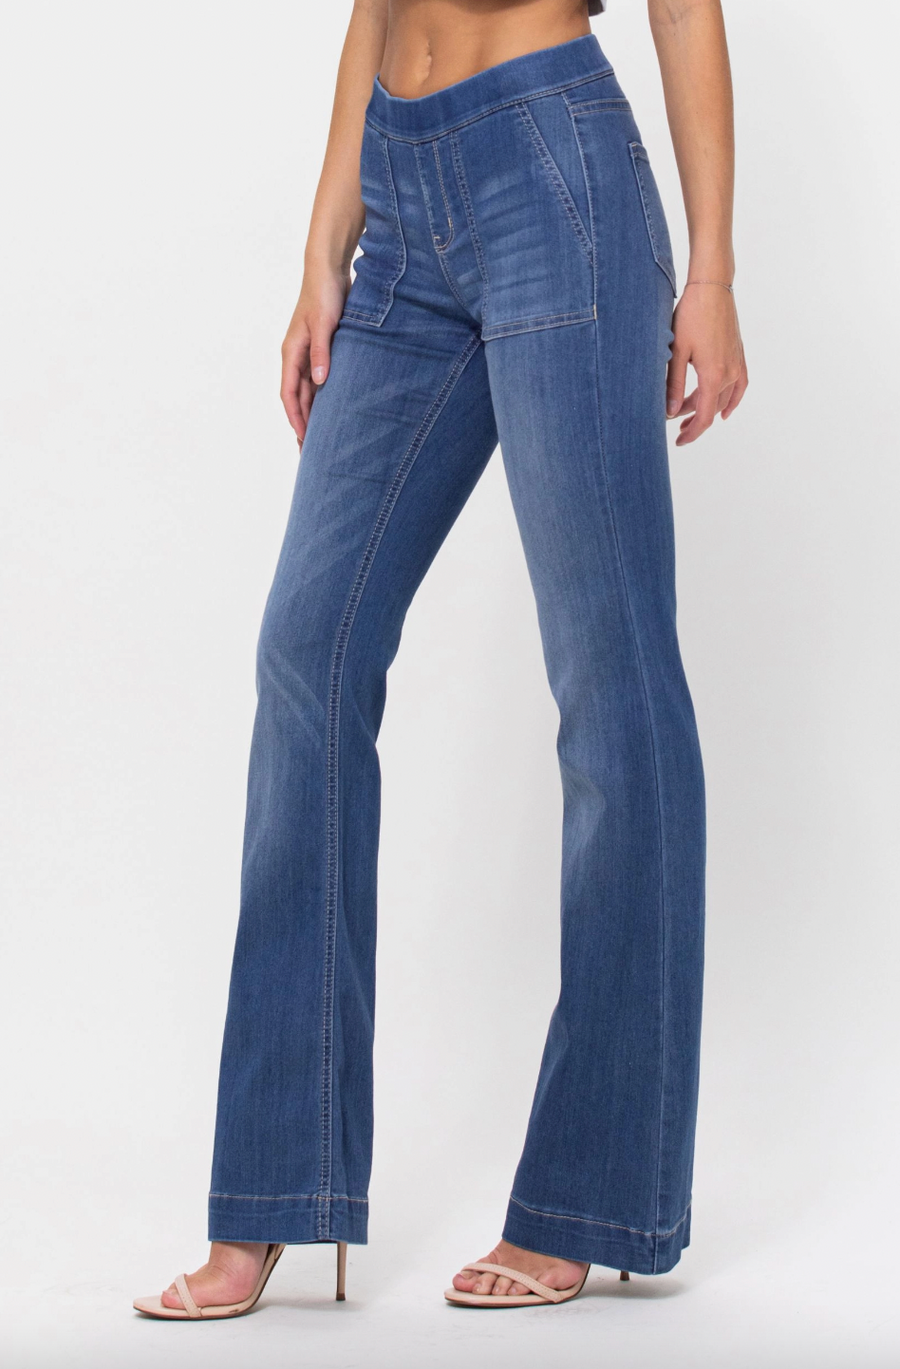 Paige 70's Denim Jeans